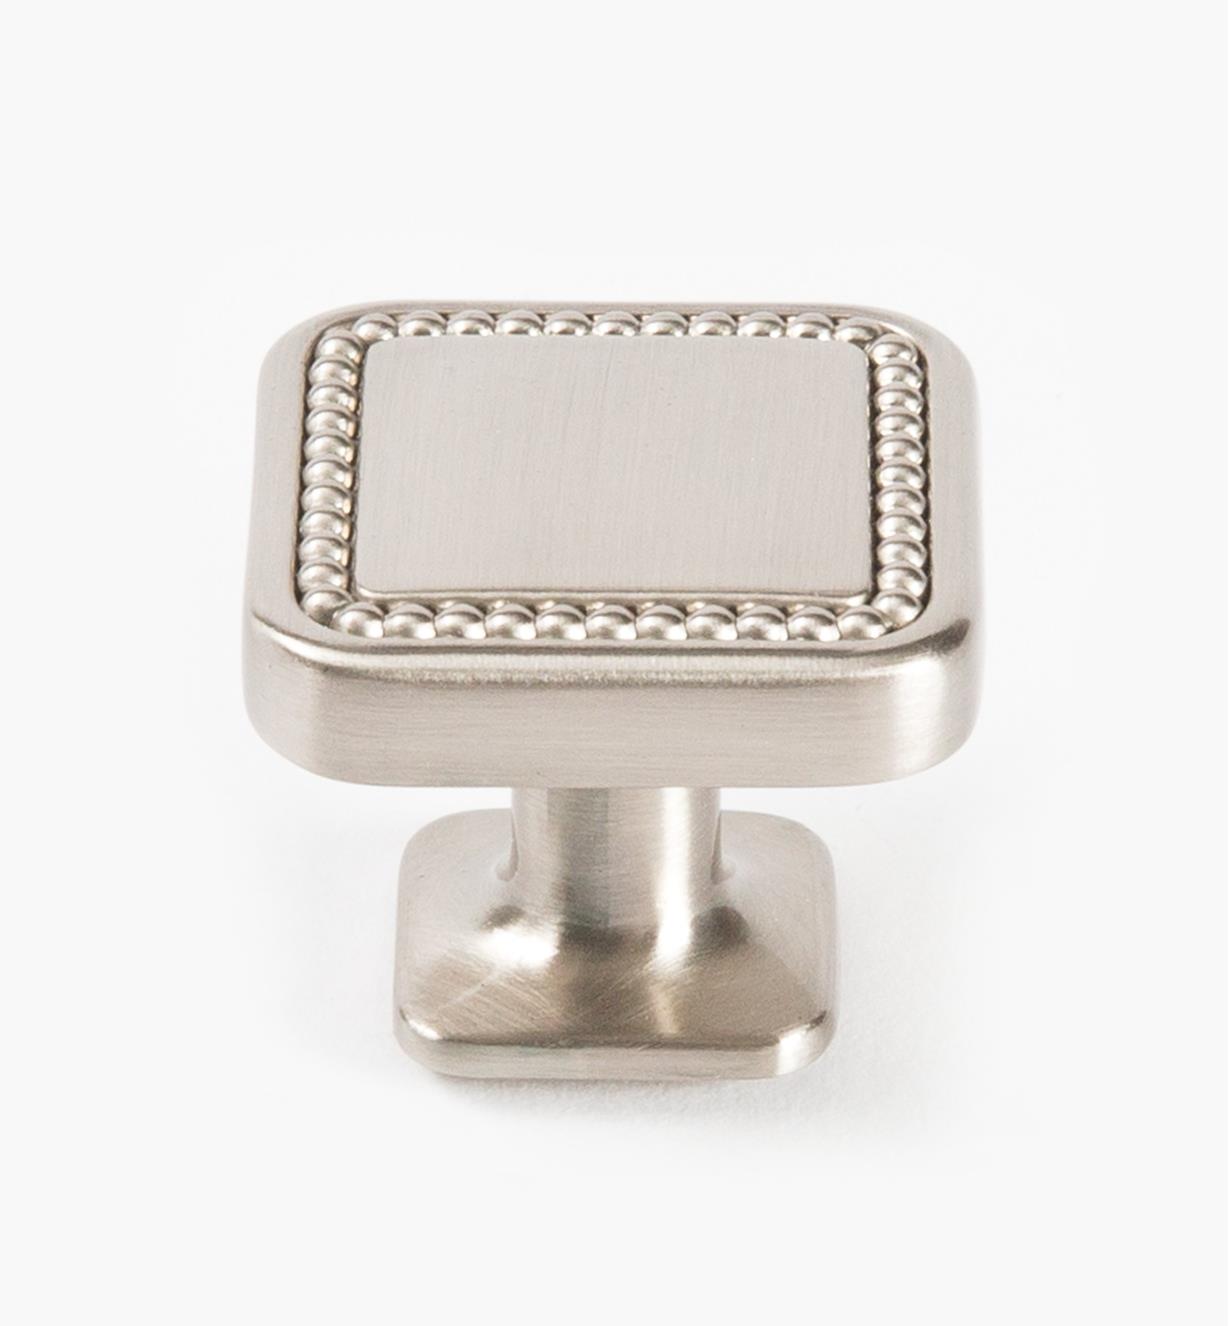 02A1640 - Bouton carré Carolyne, 32 mm (1 1/4 po), nickel satiné, l'unité